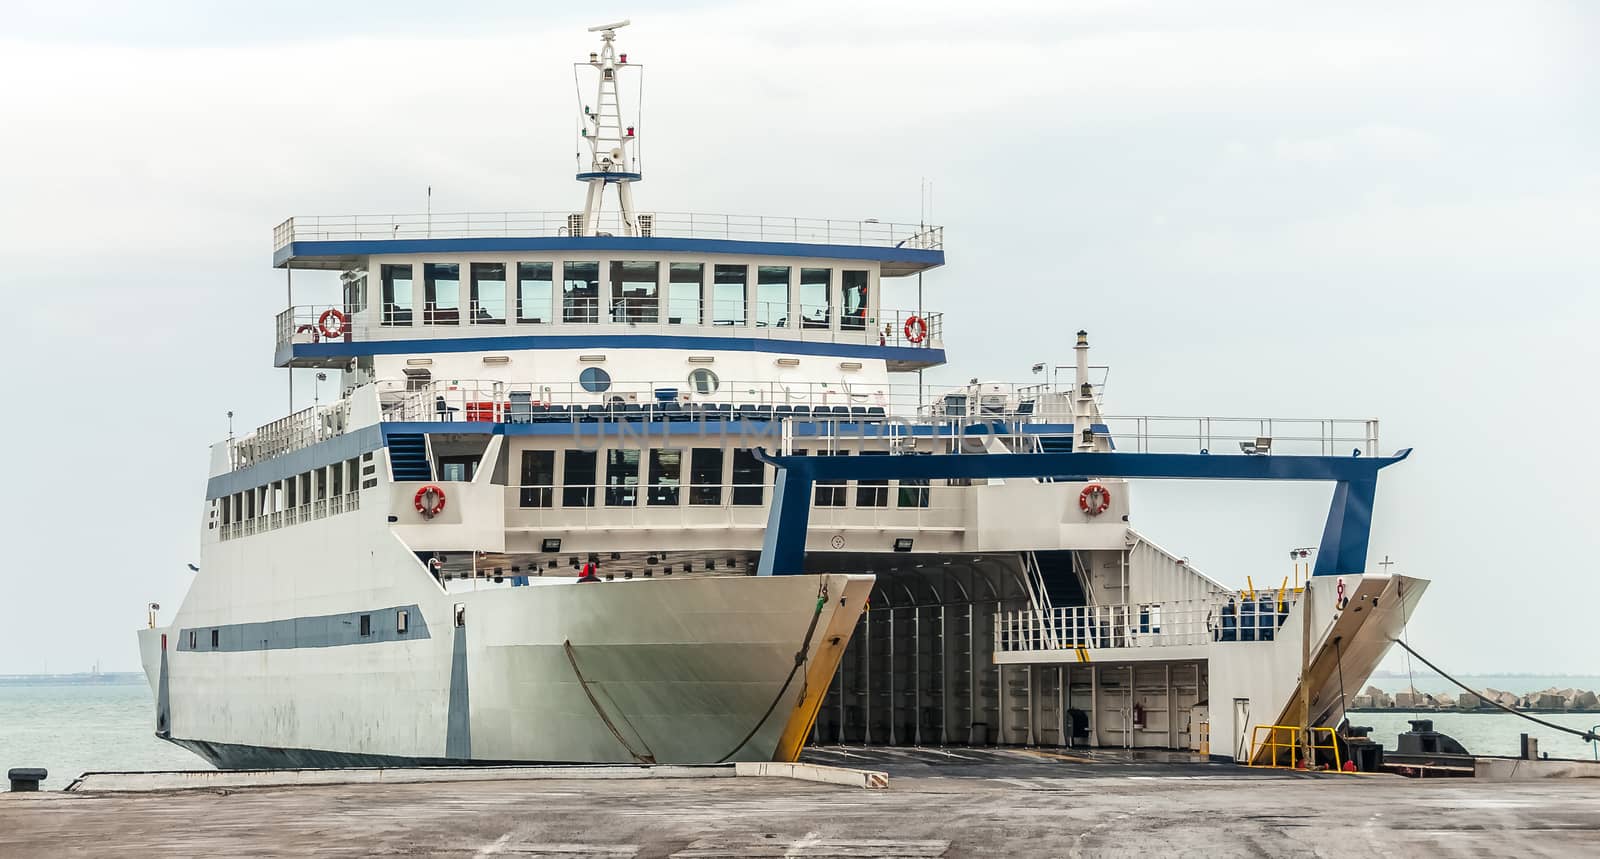 Passenger ferry docked by zeffss